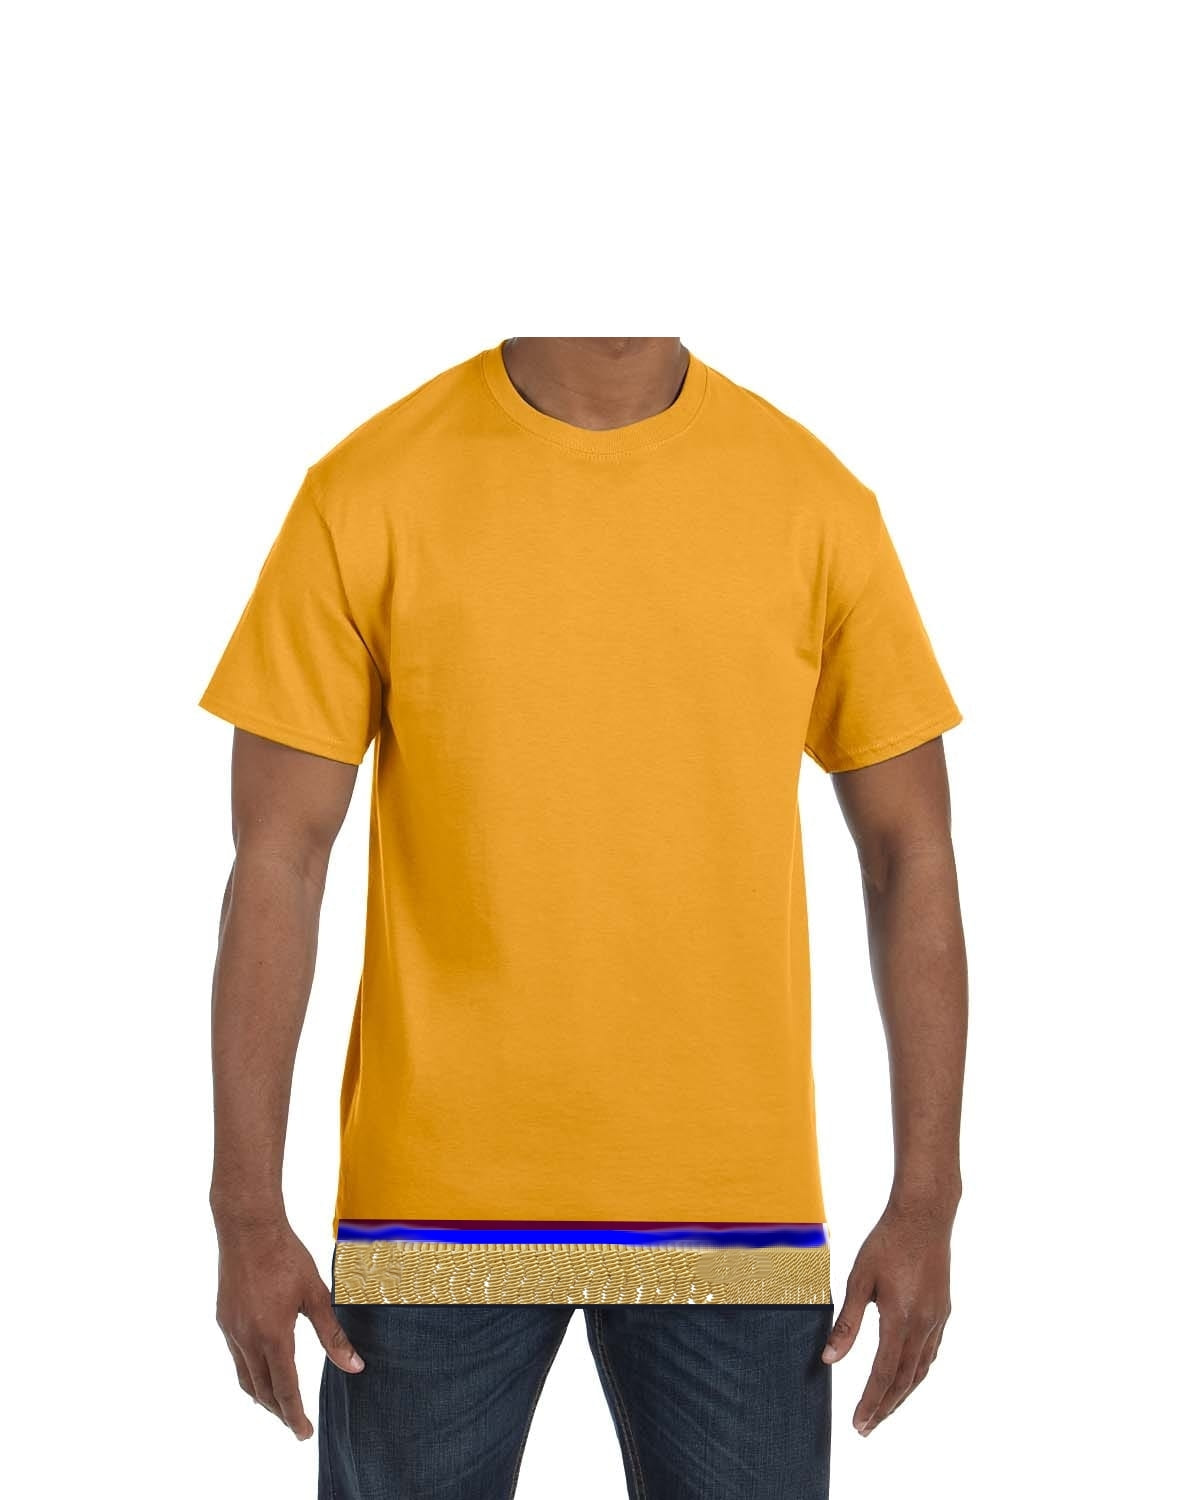 Hebrew Israelite T-Shirt w/ Fringes (Women's Sizes)